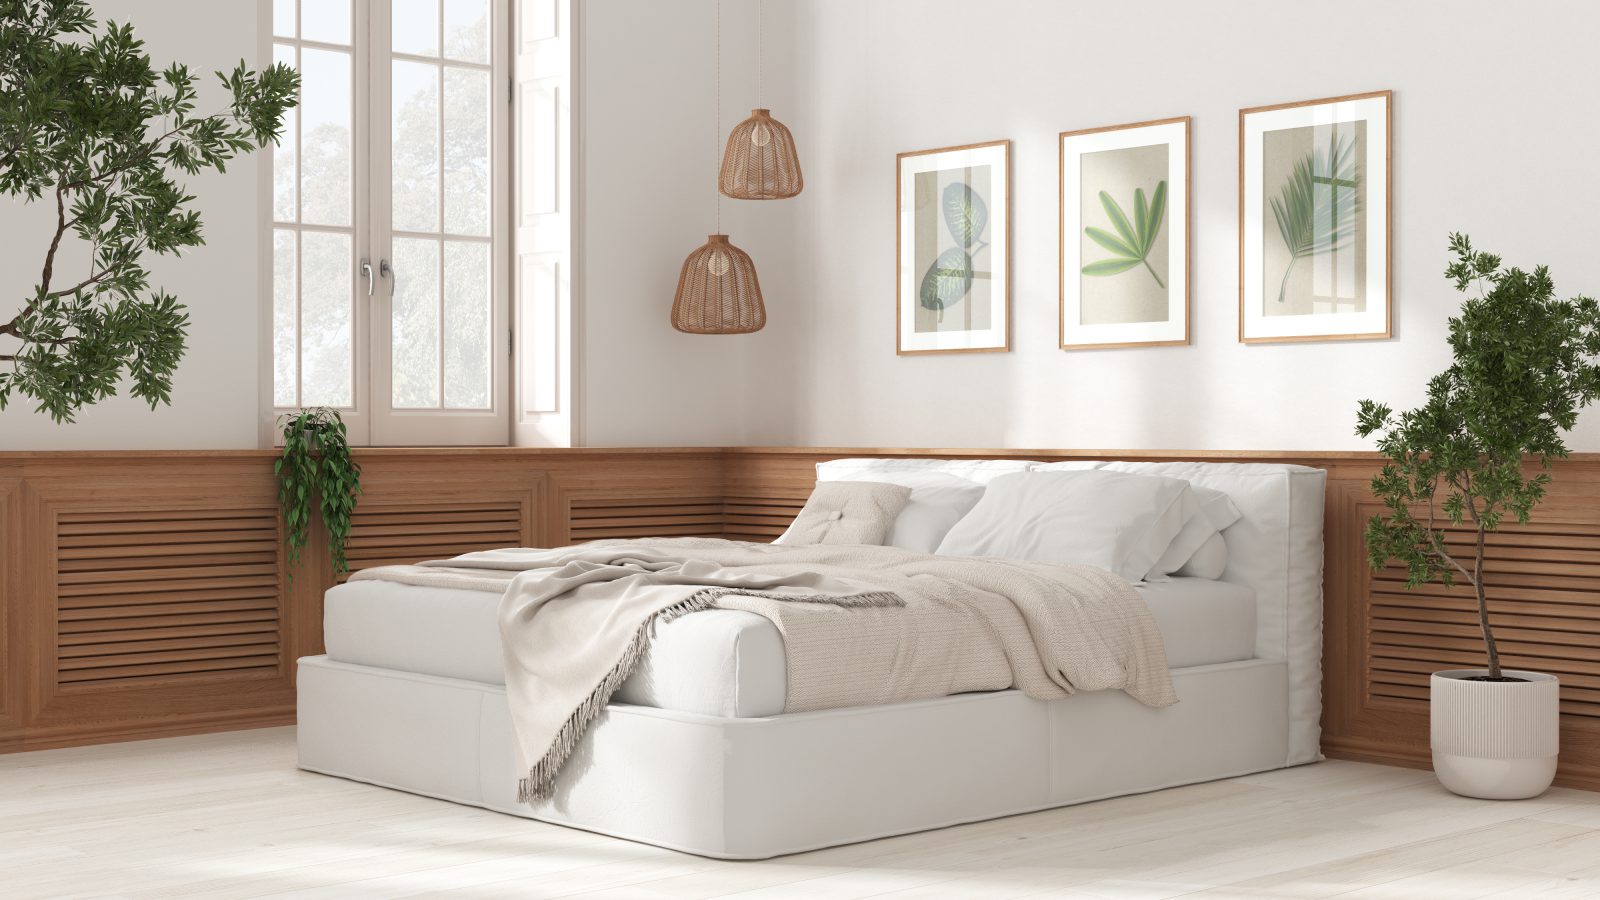 drewniane dodatki, białe łóżko, białe podłogi